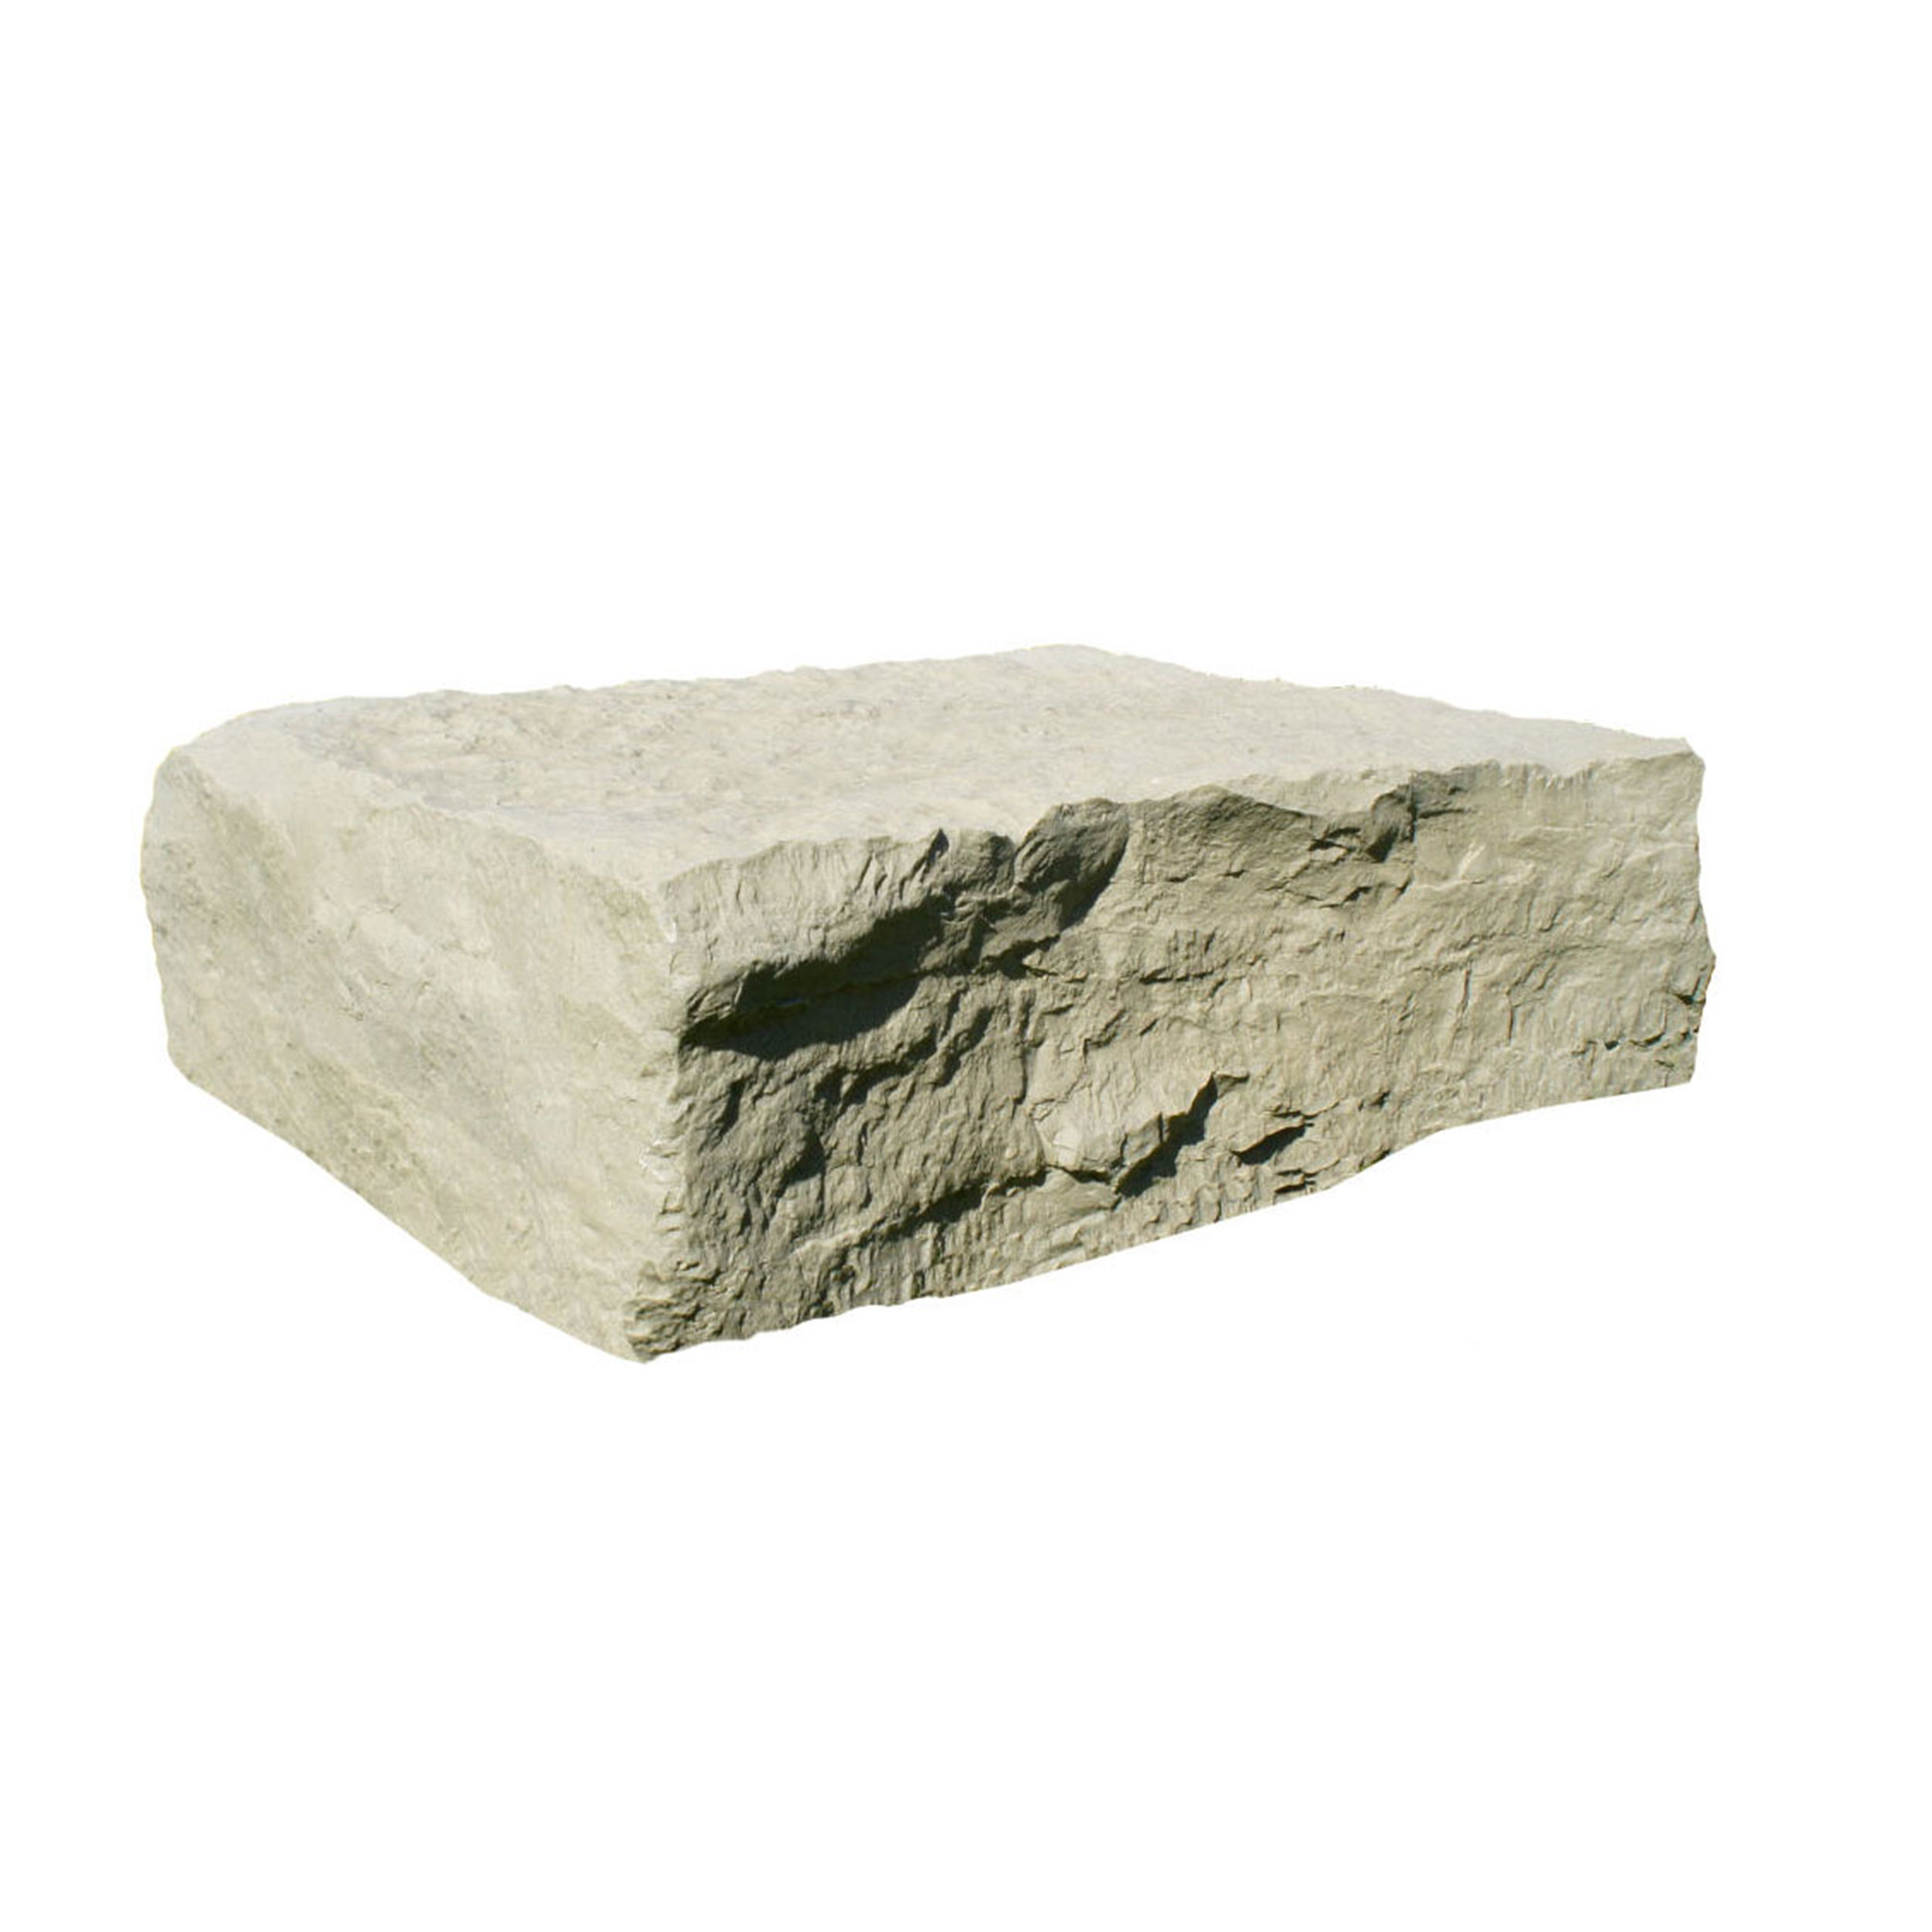 Full Rock - Landscaping Rock, Oak/armor Stone